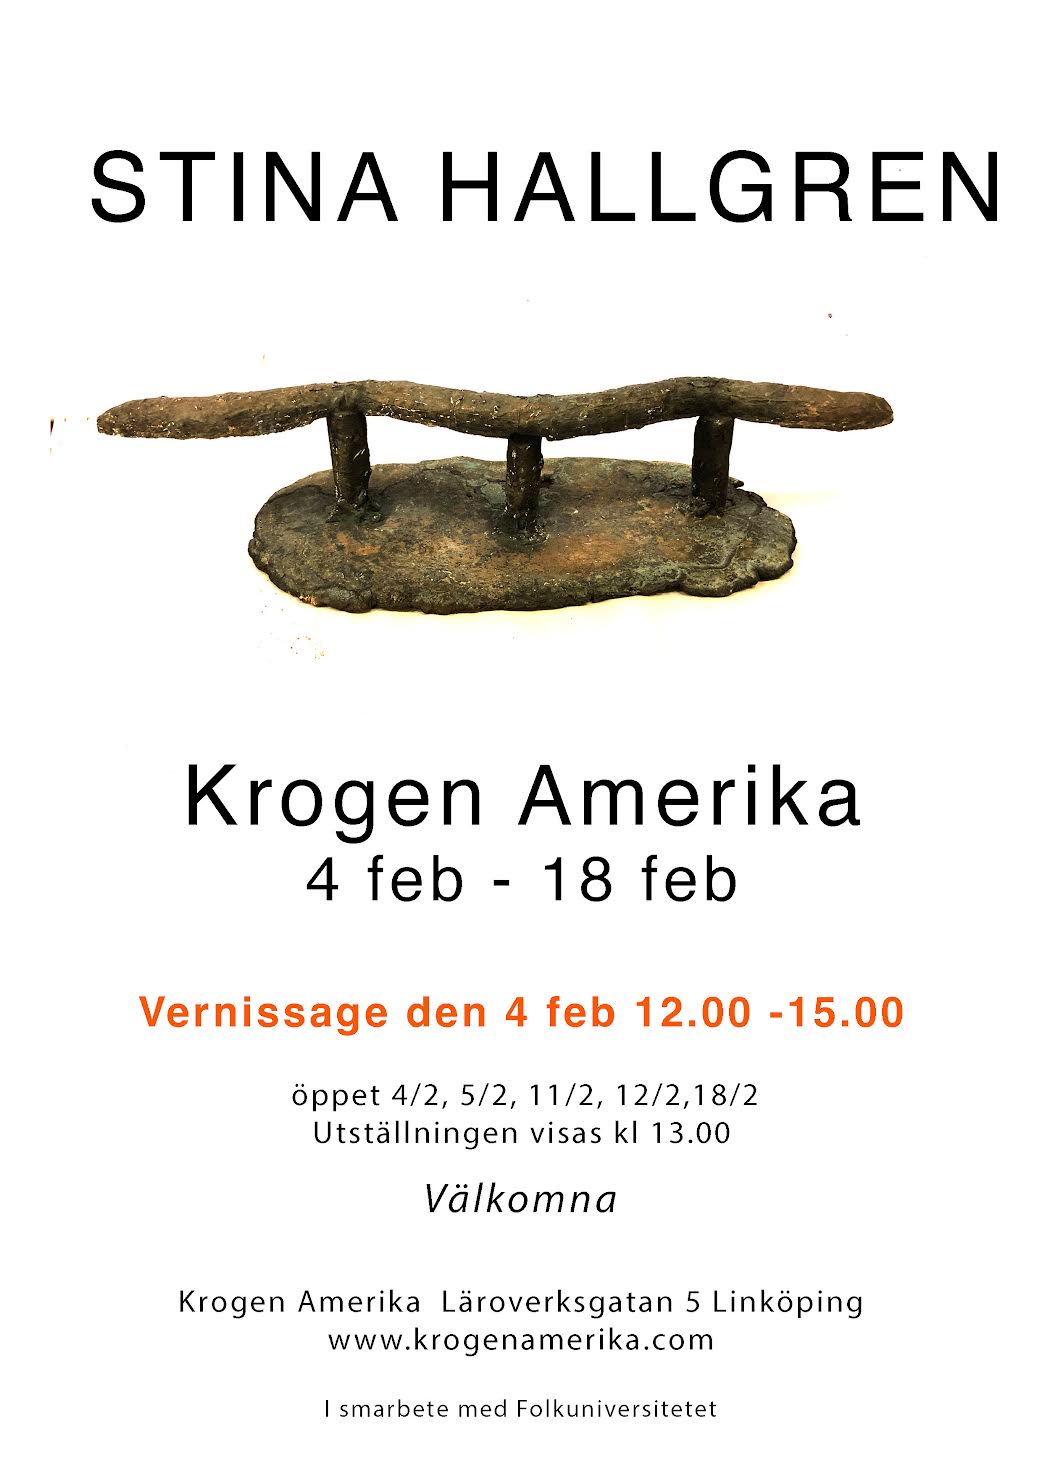 Välkomna till vårens första utställning på Krogen Amerika. Vernissage den 4/2 kl 12:00 - 15:00. Vi visar måleri och keramik av Norrköpingskonstnären Stina Hallgren.